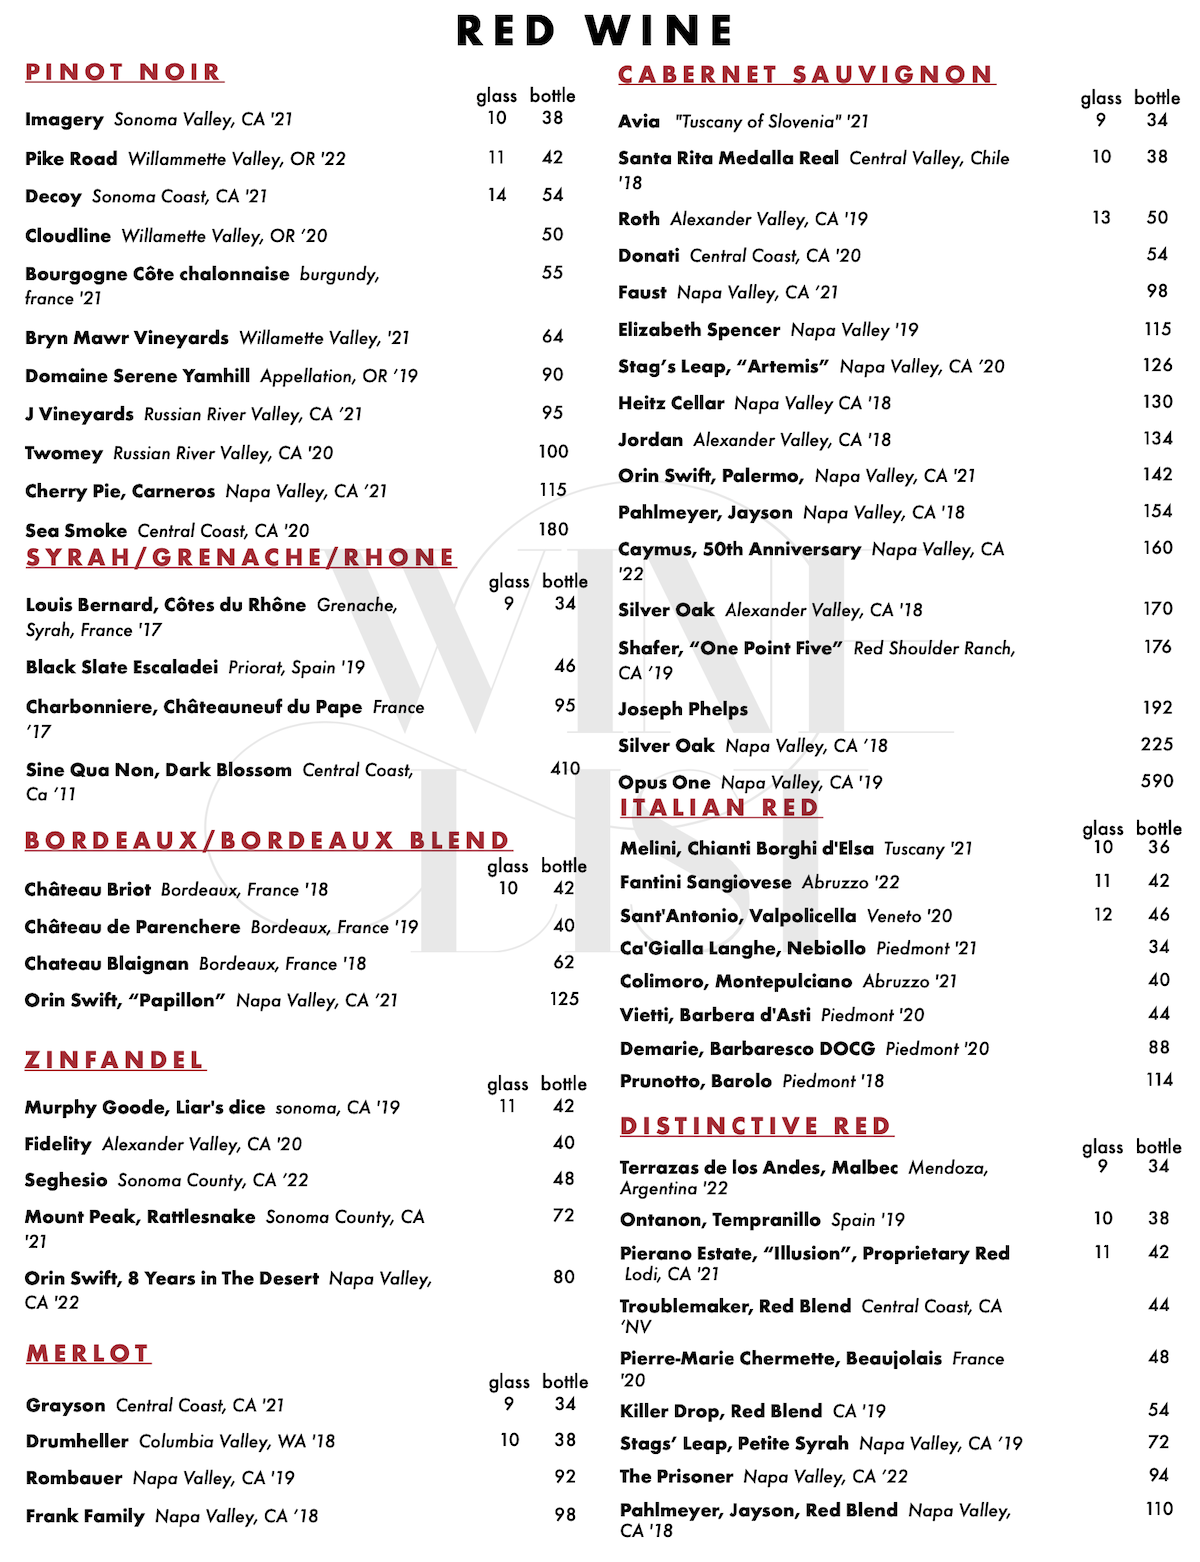 Villaggio's Red Wine List